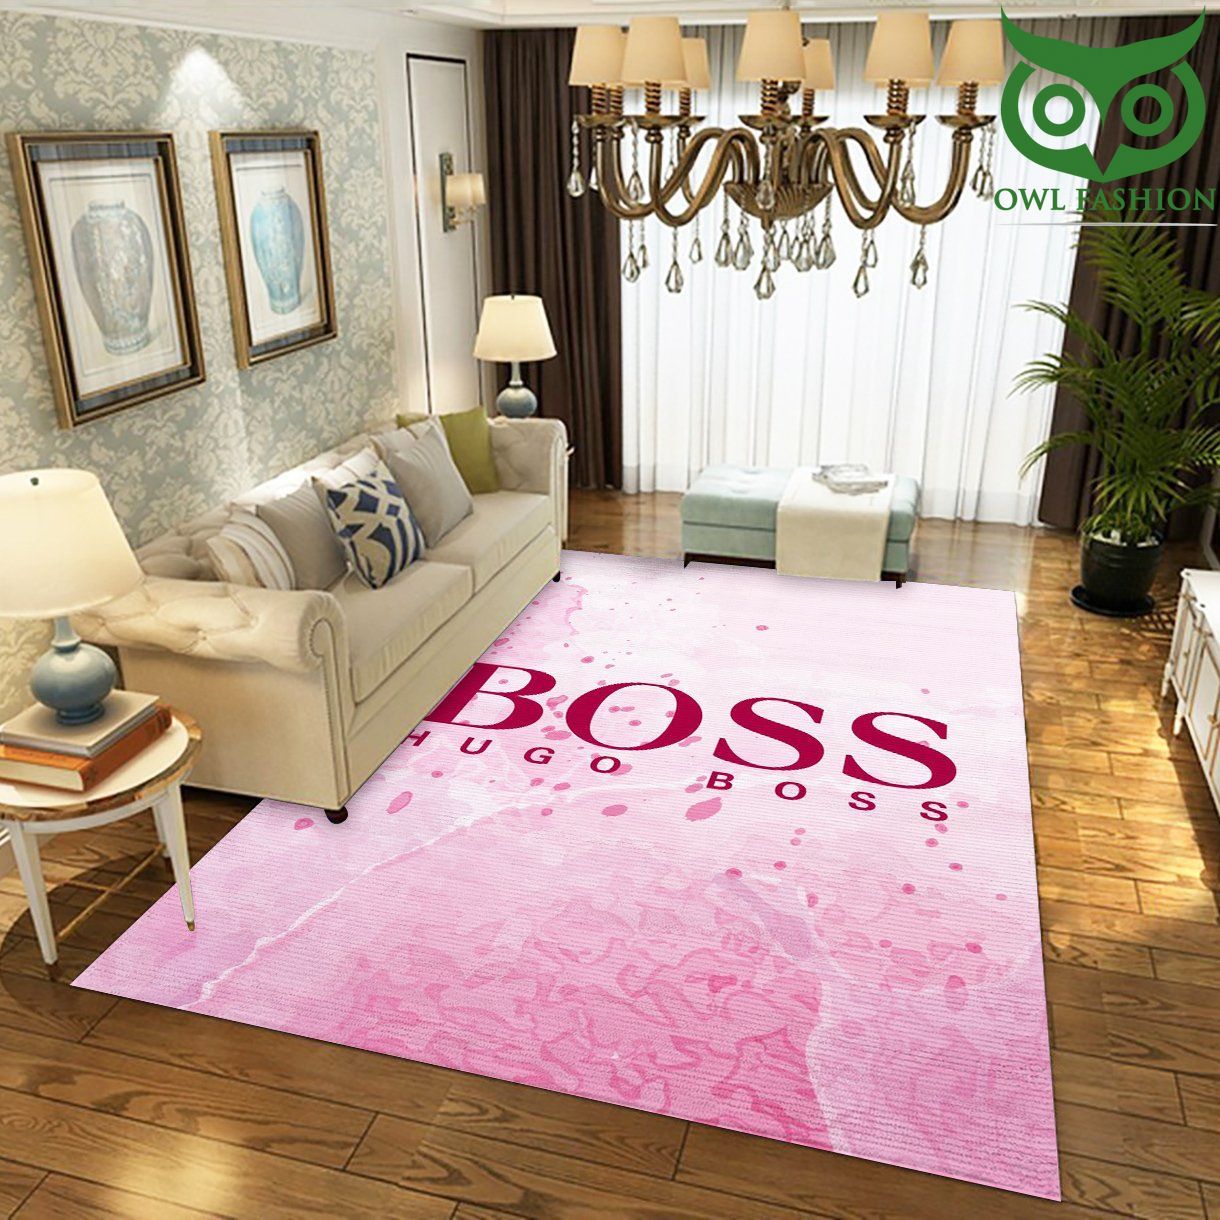 Hugo Boss carpet rug for Floor Decor